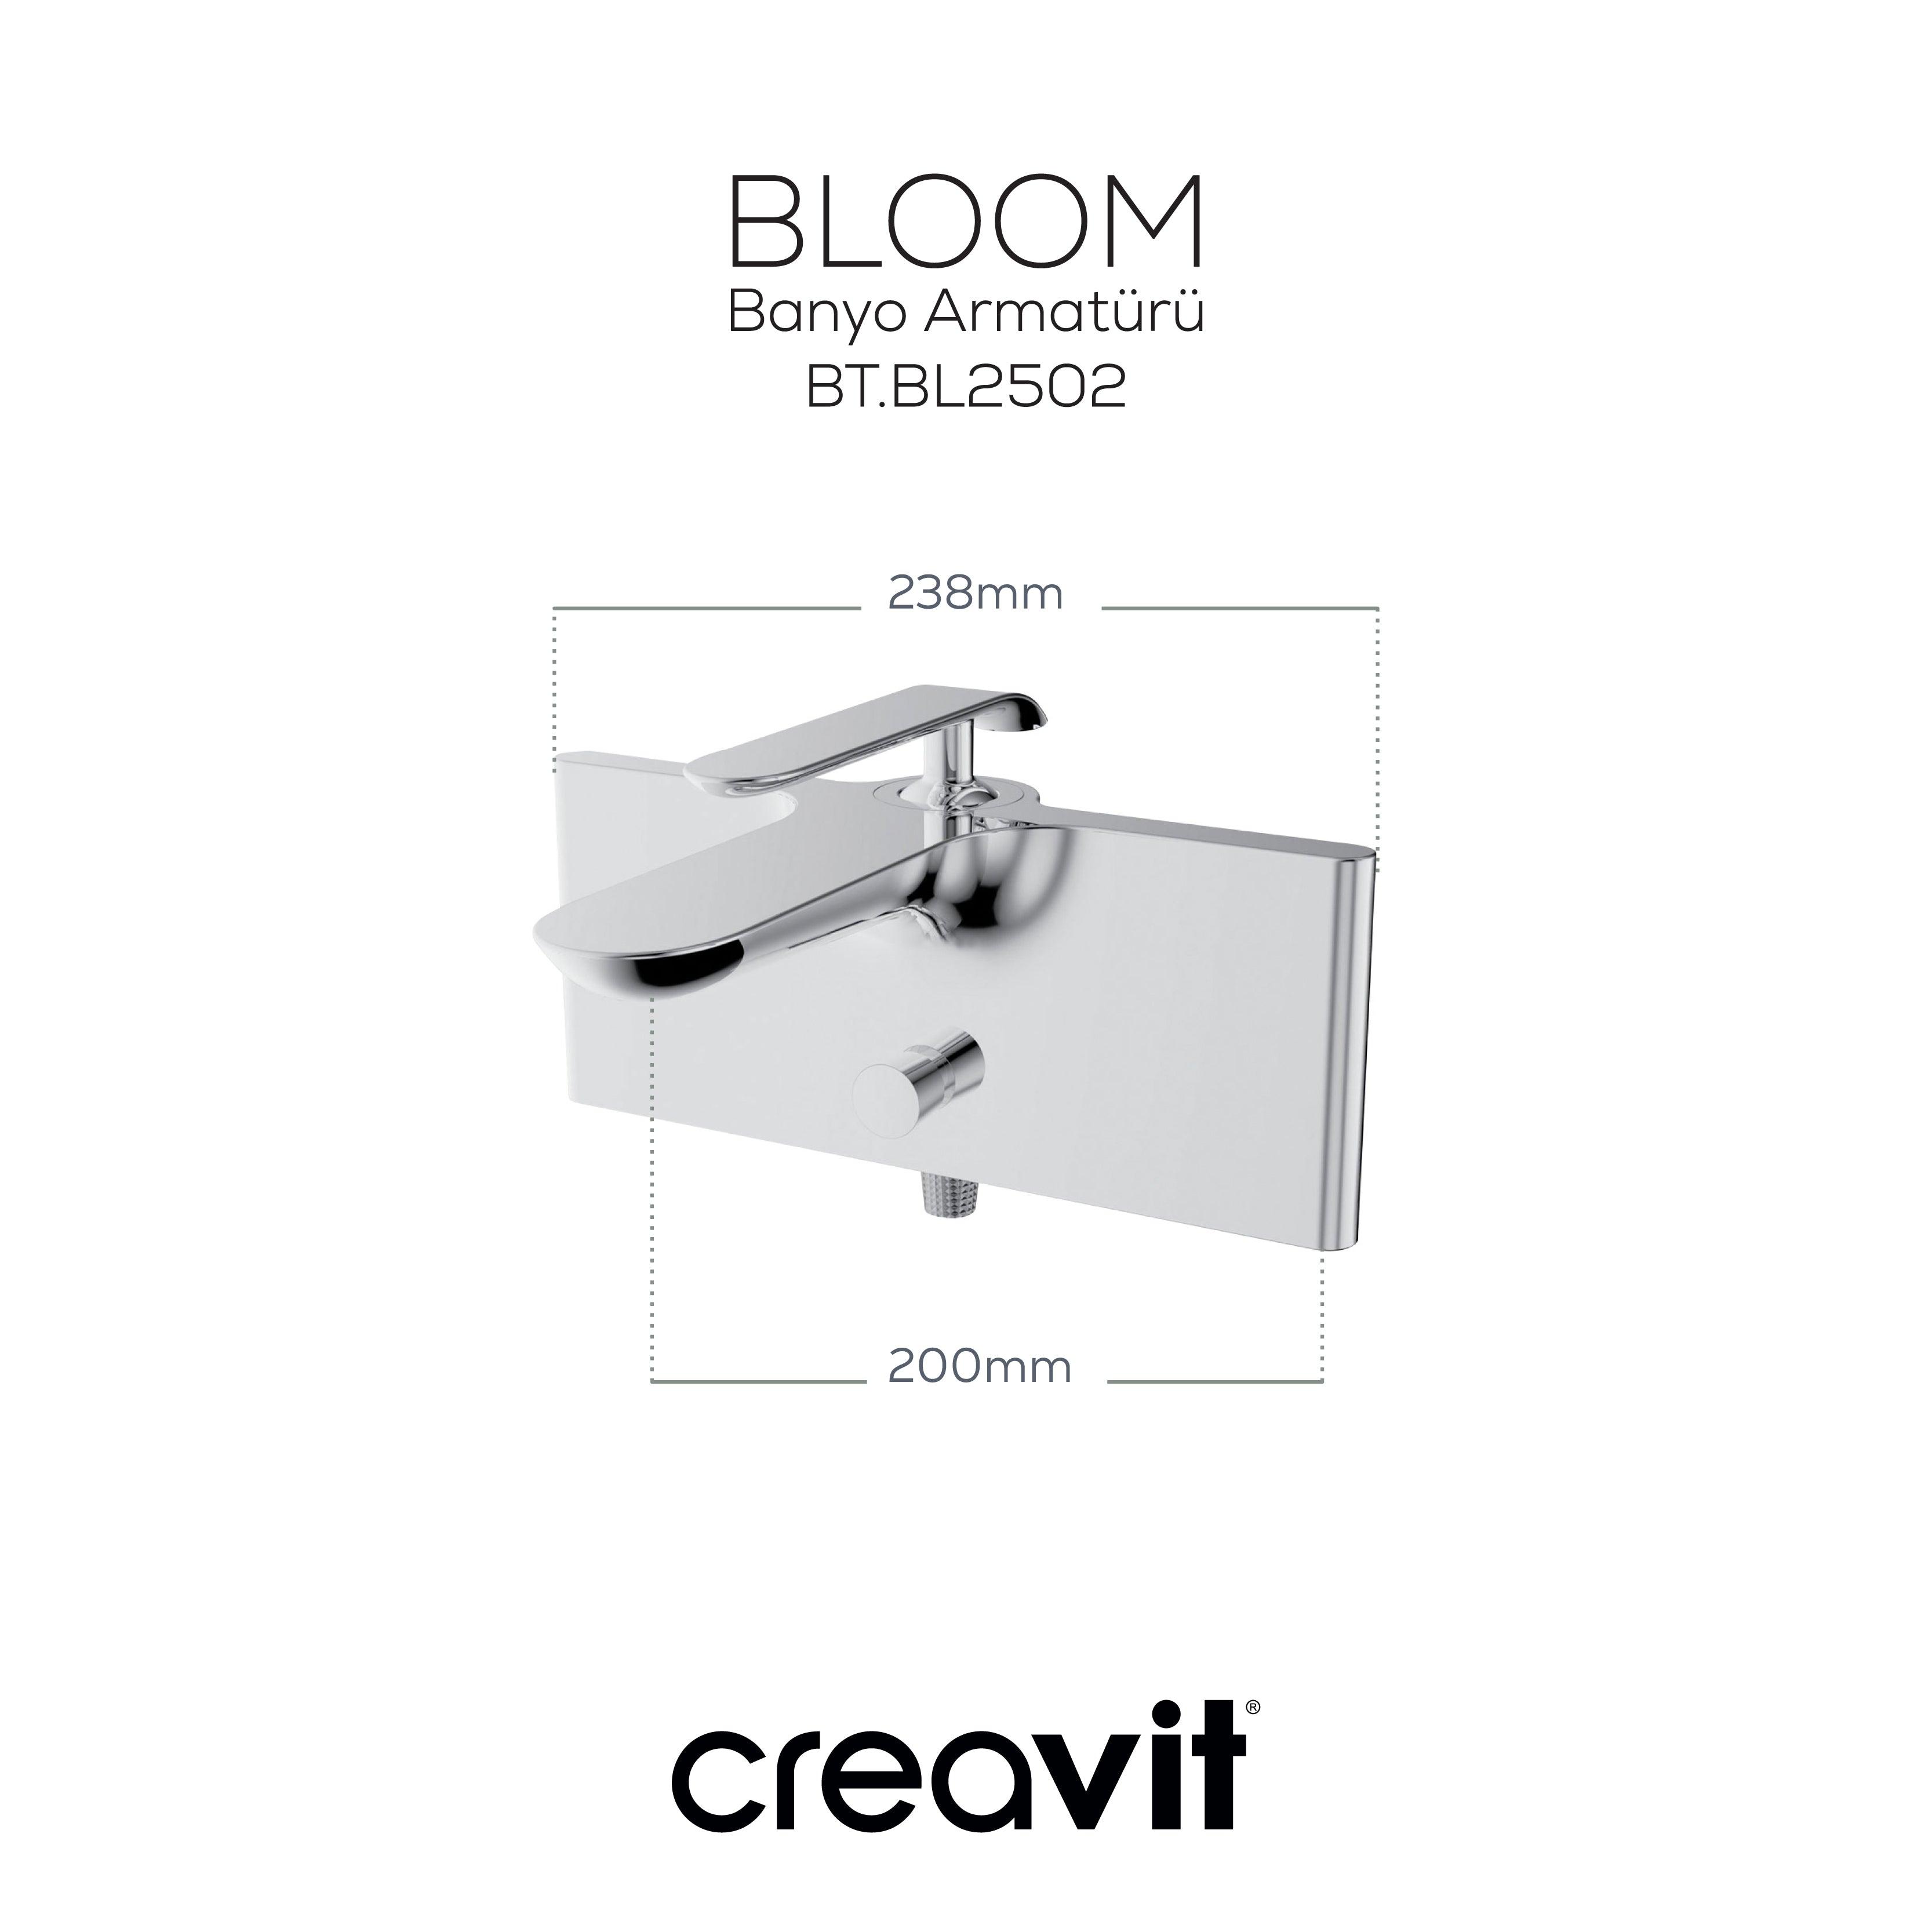 Bloom Banyo Armatürü Krom - Creavit | Banyo Bu Tarafta